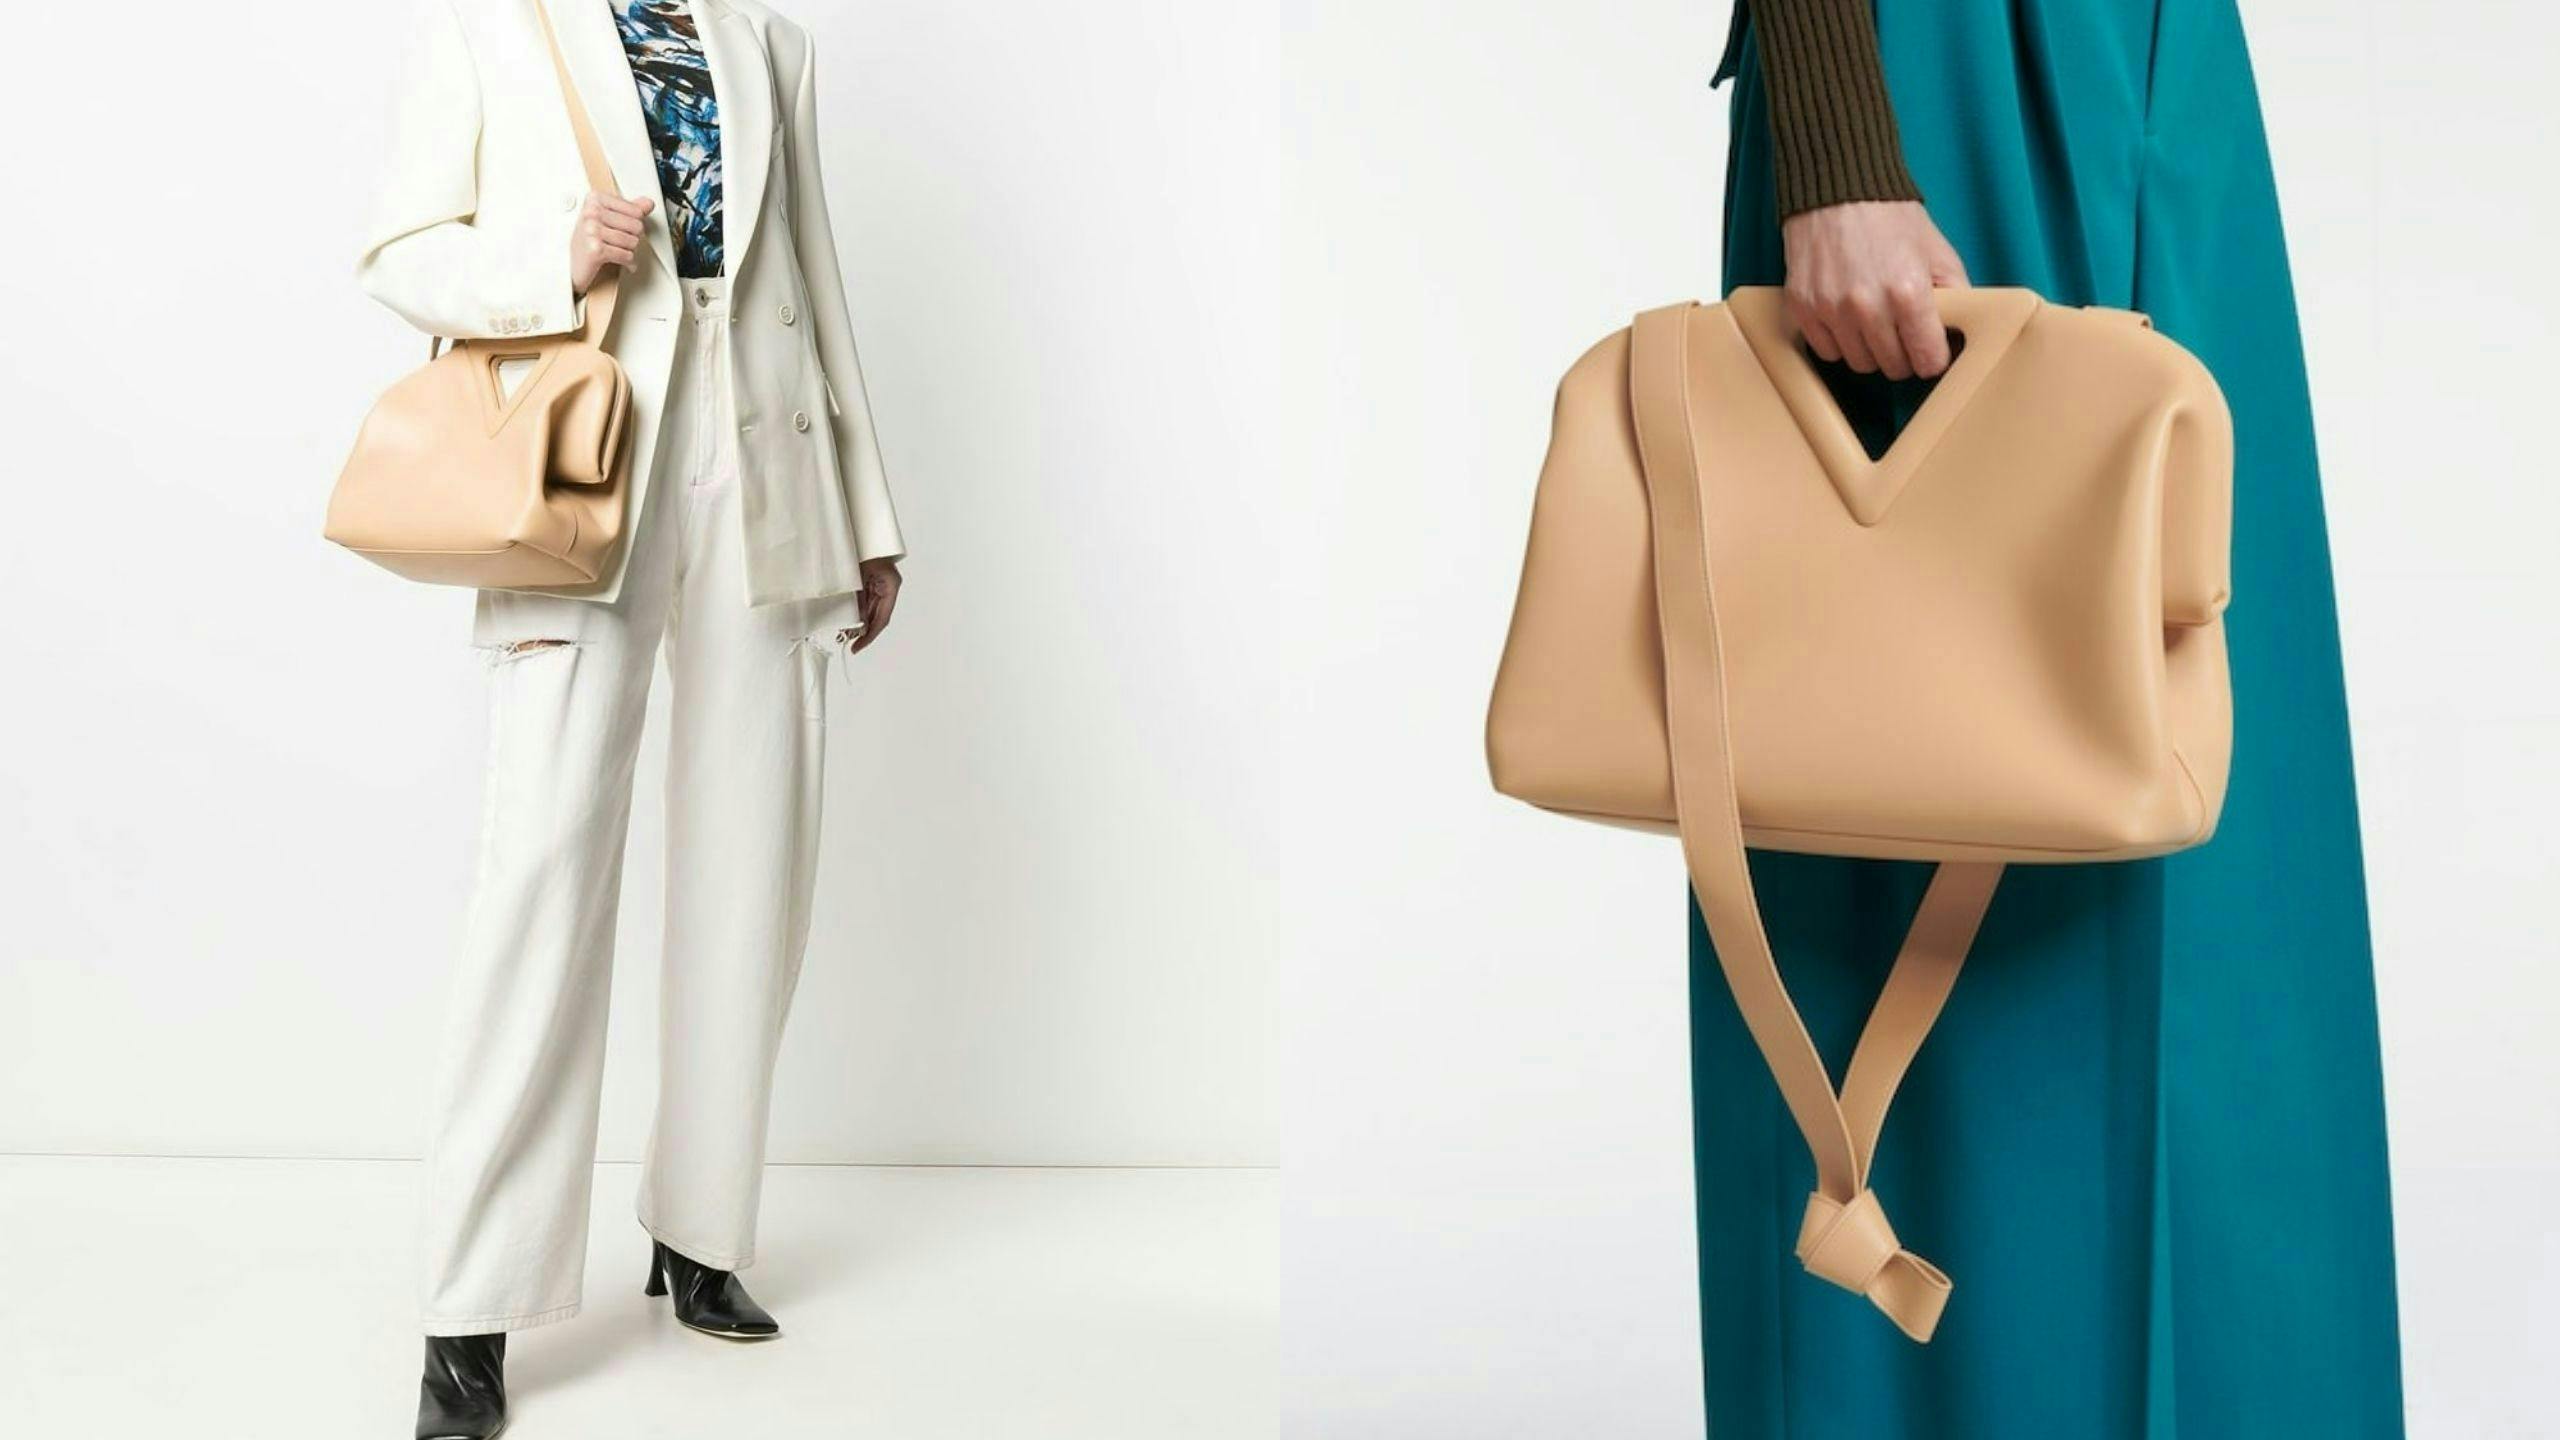 clothing apparel handbag accessories accessory bag suit coat overcoat